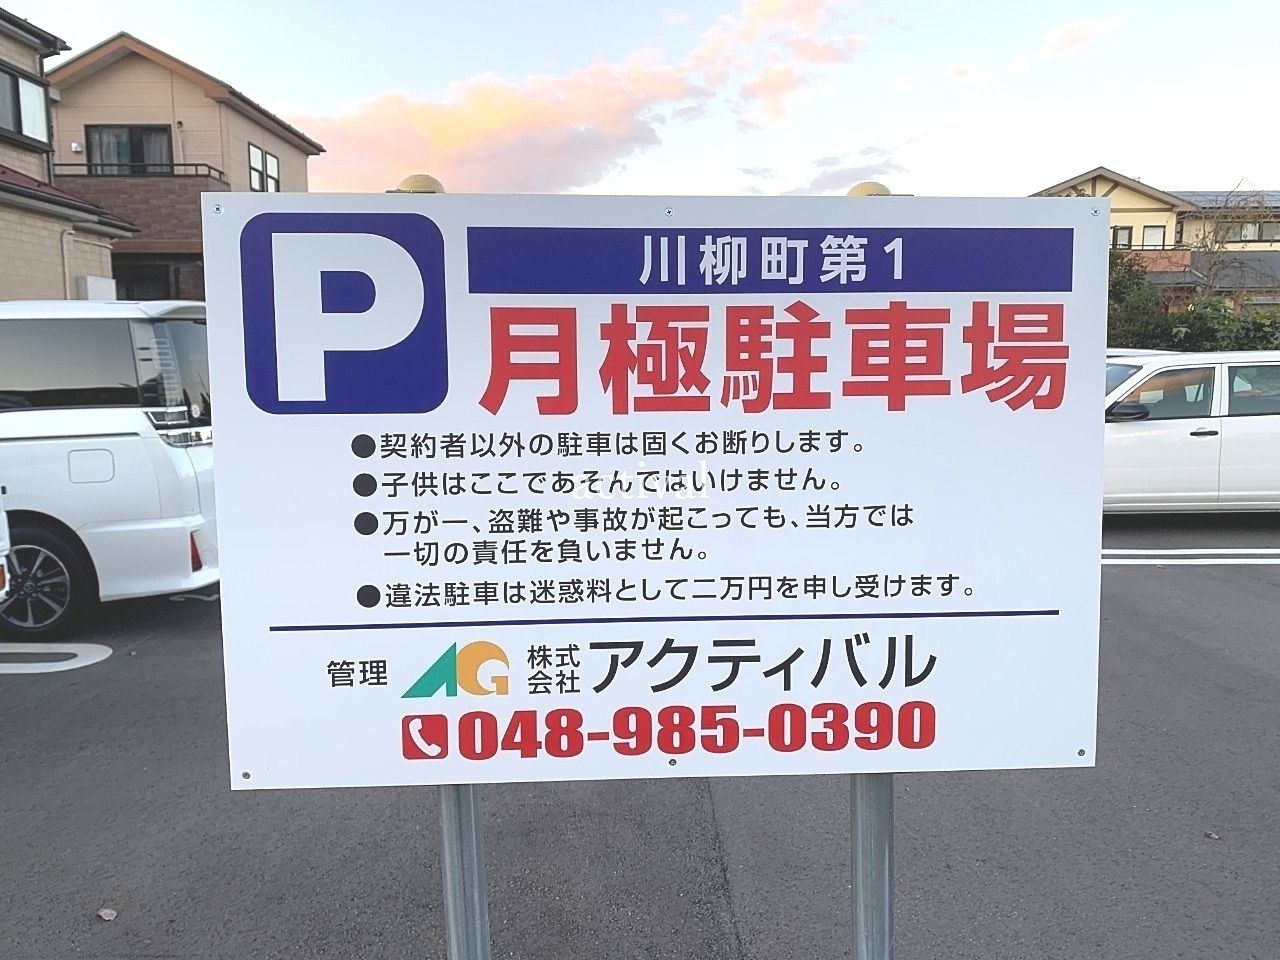 川柳町第1駐車場の新しい駐車場看板です。